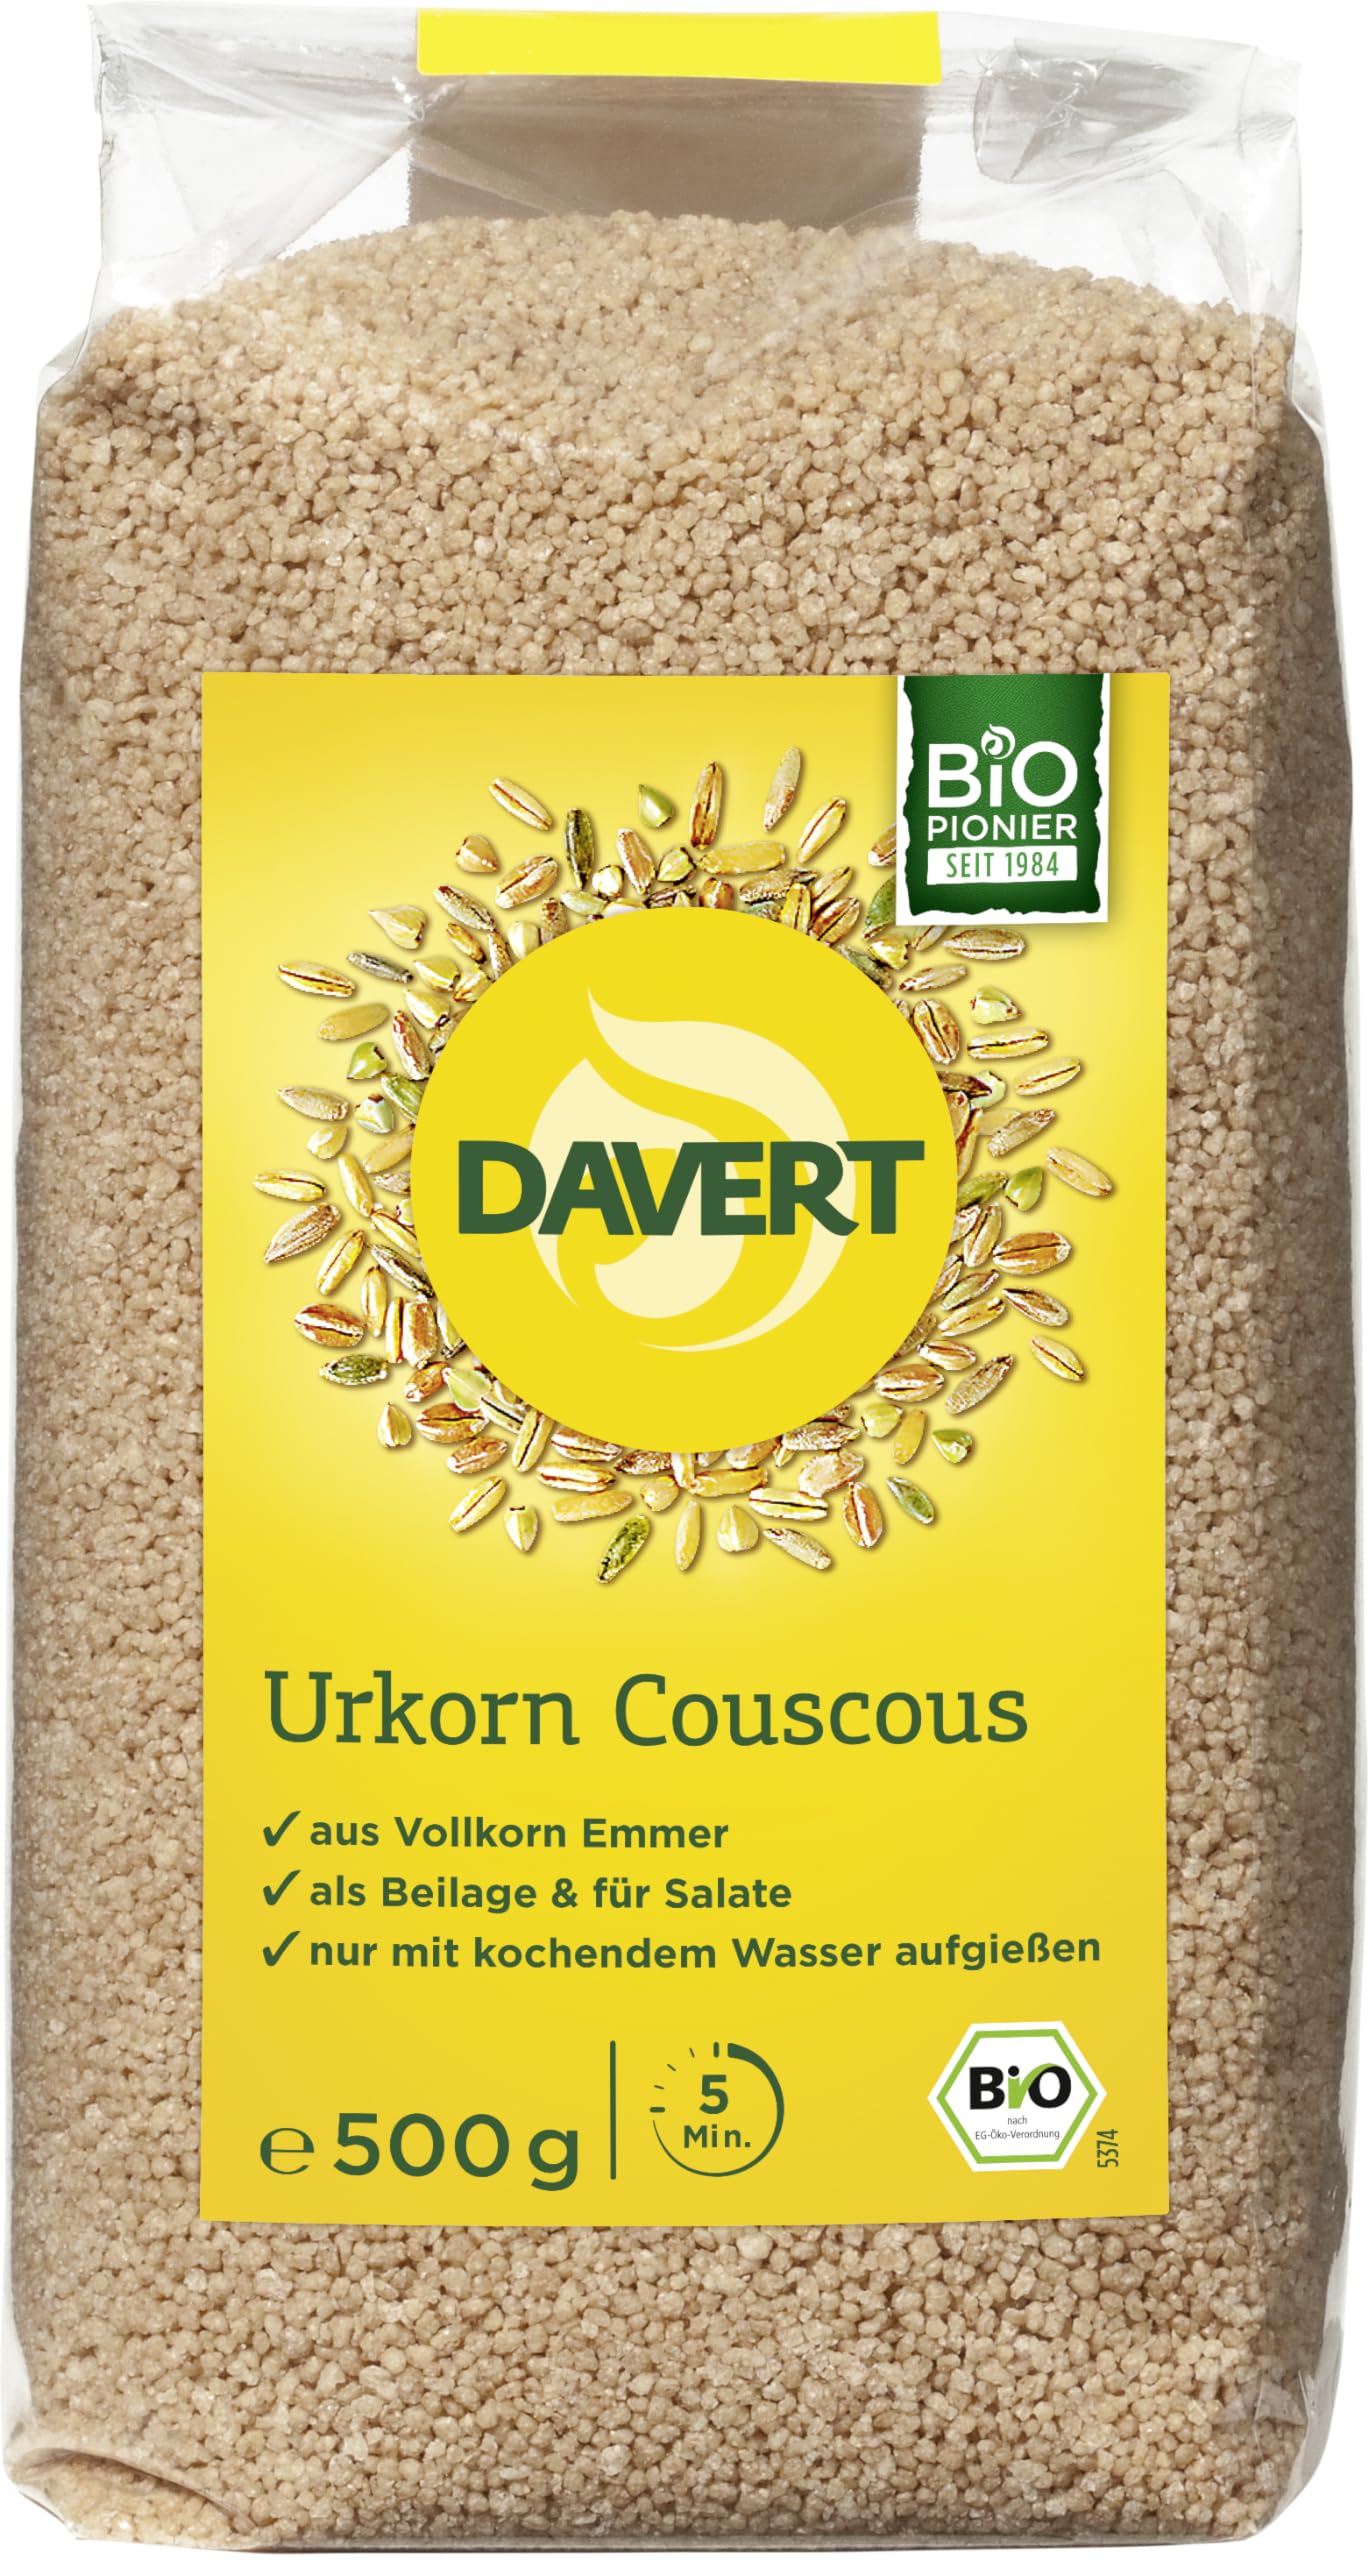 Davert Bio Urkorn Couscous aus Emmer (6 x 500 gr)